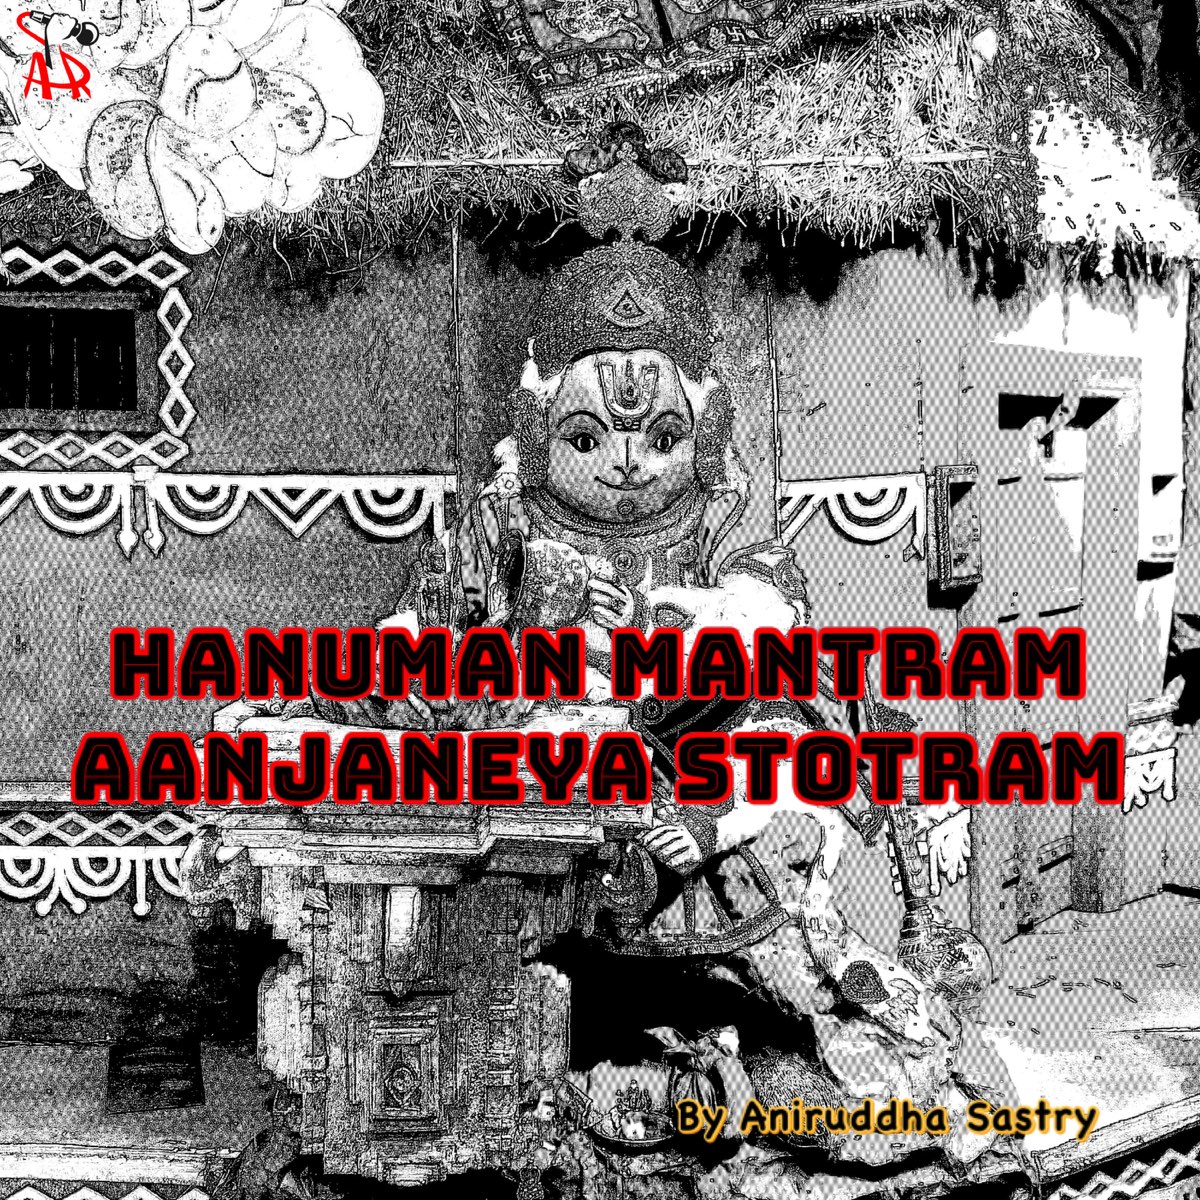 Aanjaneya Hanuman Mantram Stotram - Single by Aniruddha Sastry on ...